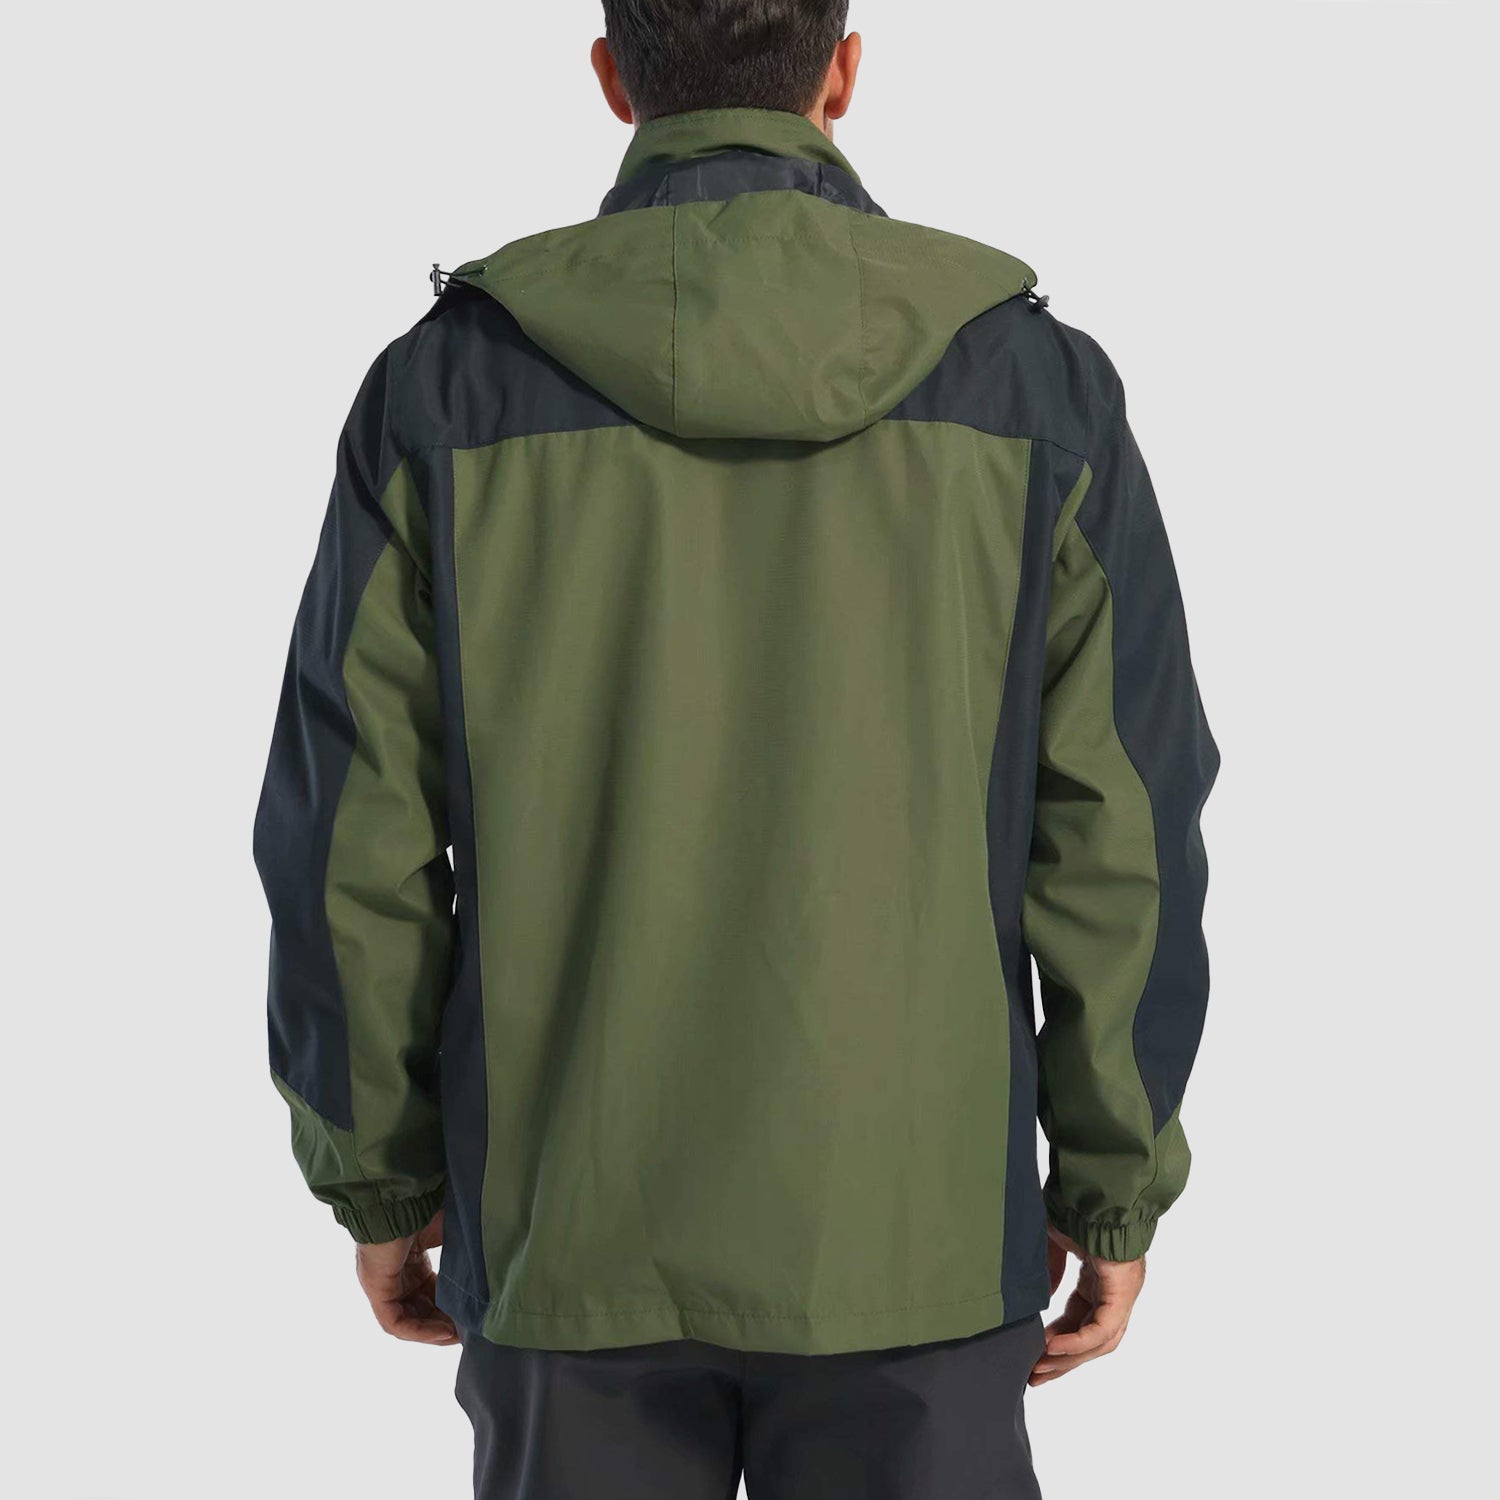 MAGCOMSEN Men's Long Raincoat Waterproof Reusable Hiker Rain